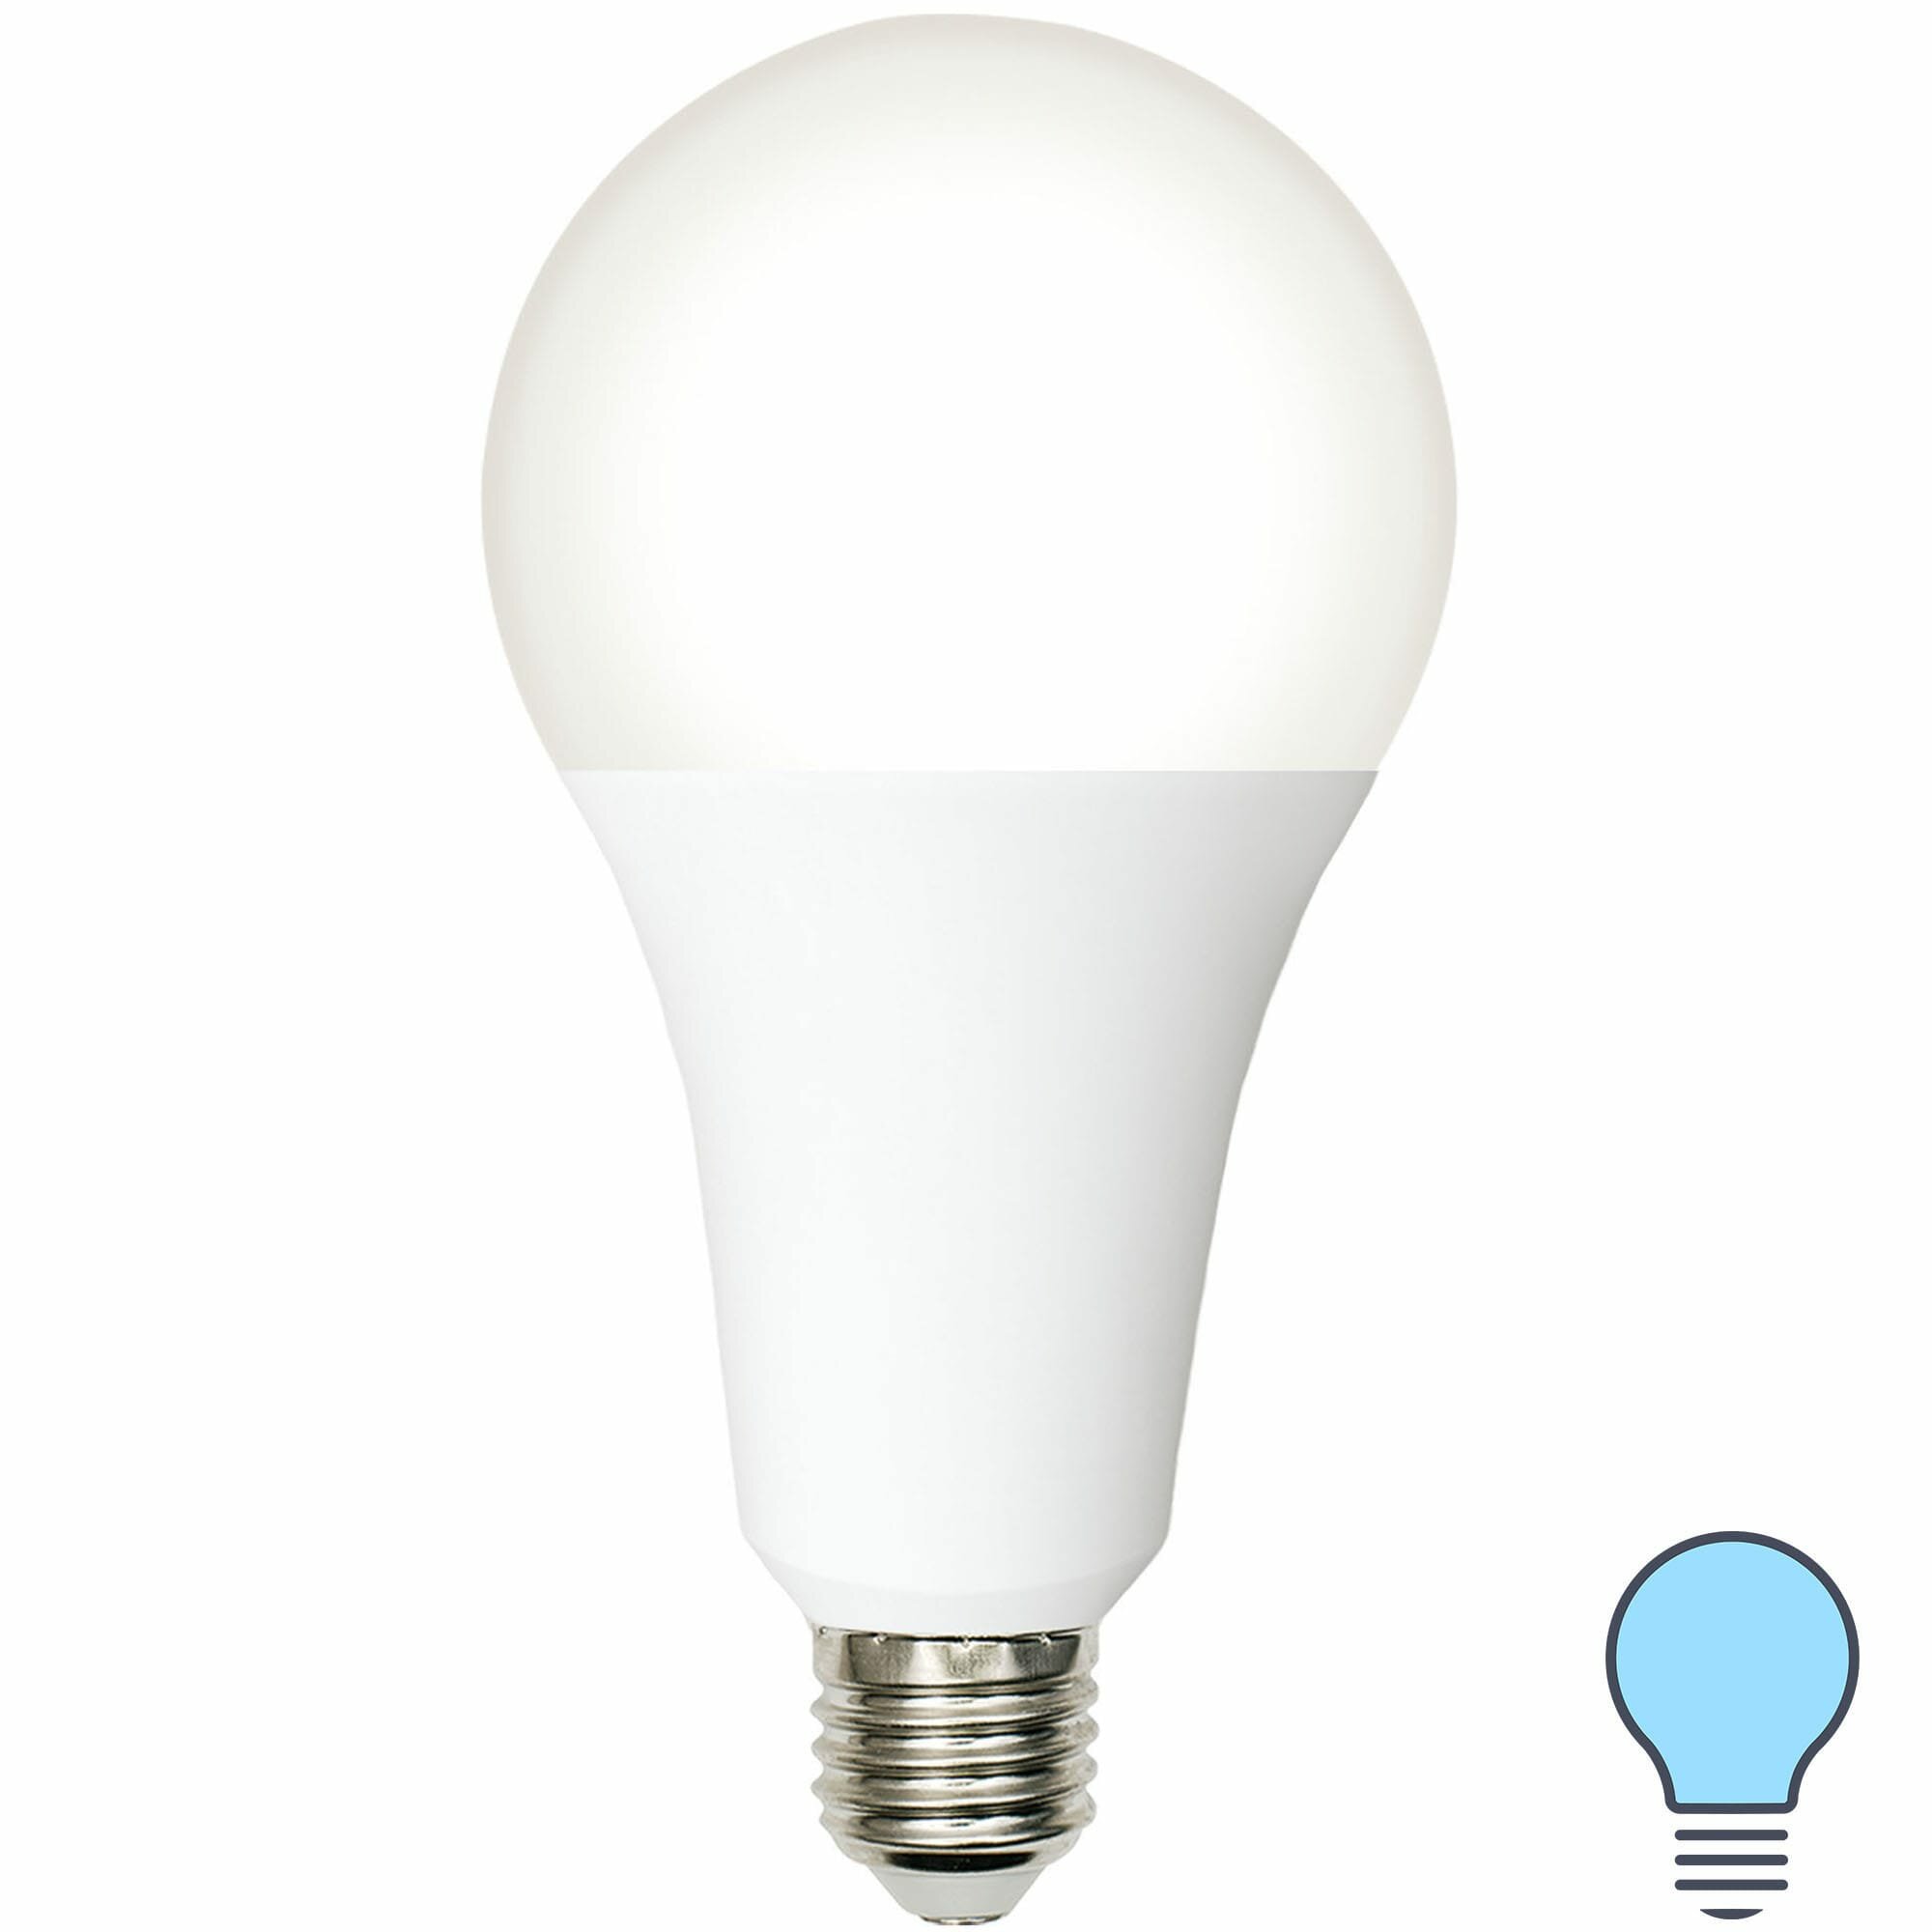 Лампа светодиодная Volpe E27 210-240 В 30 Вт груша матовая 3000 лм холодный белый свет. Набор из 2 шт.